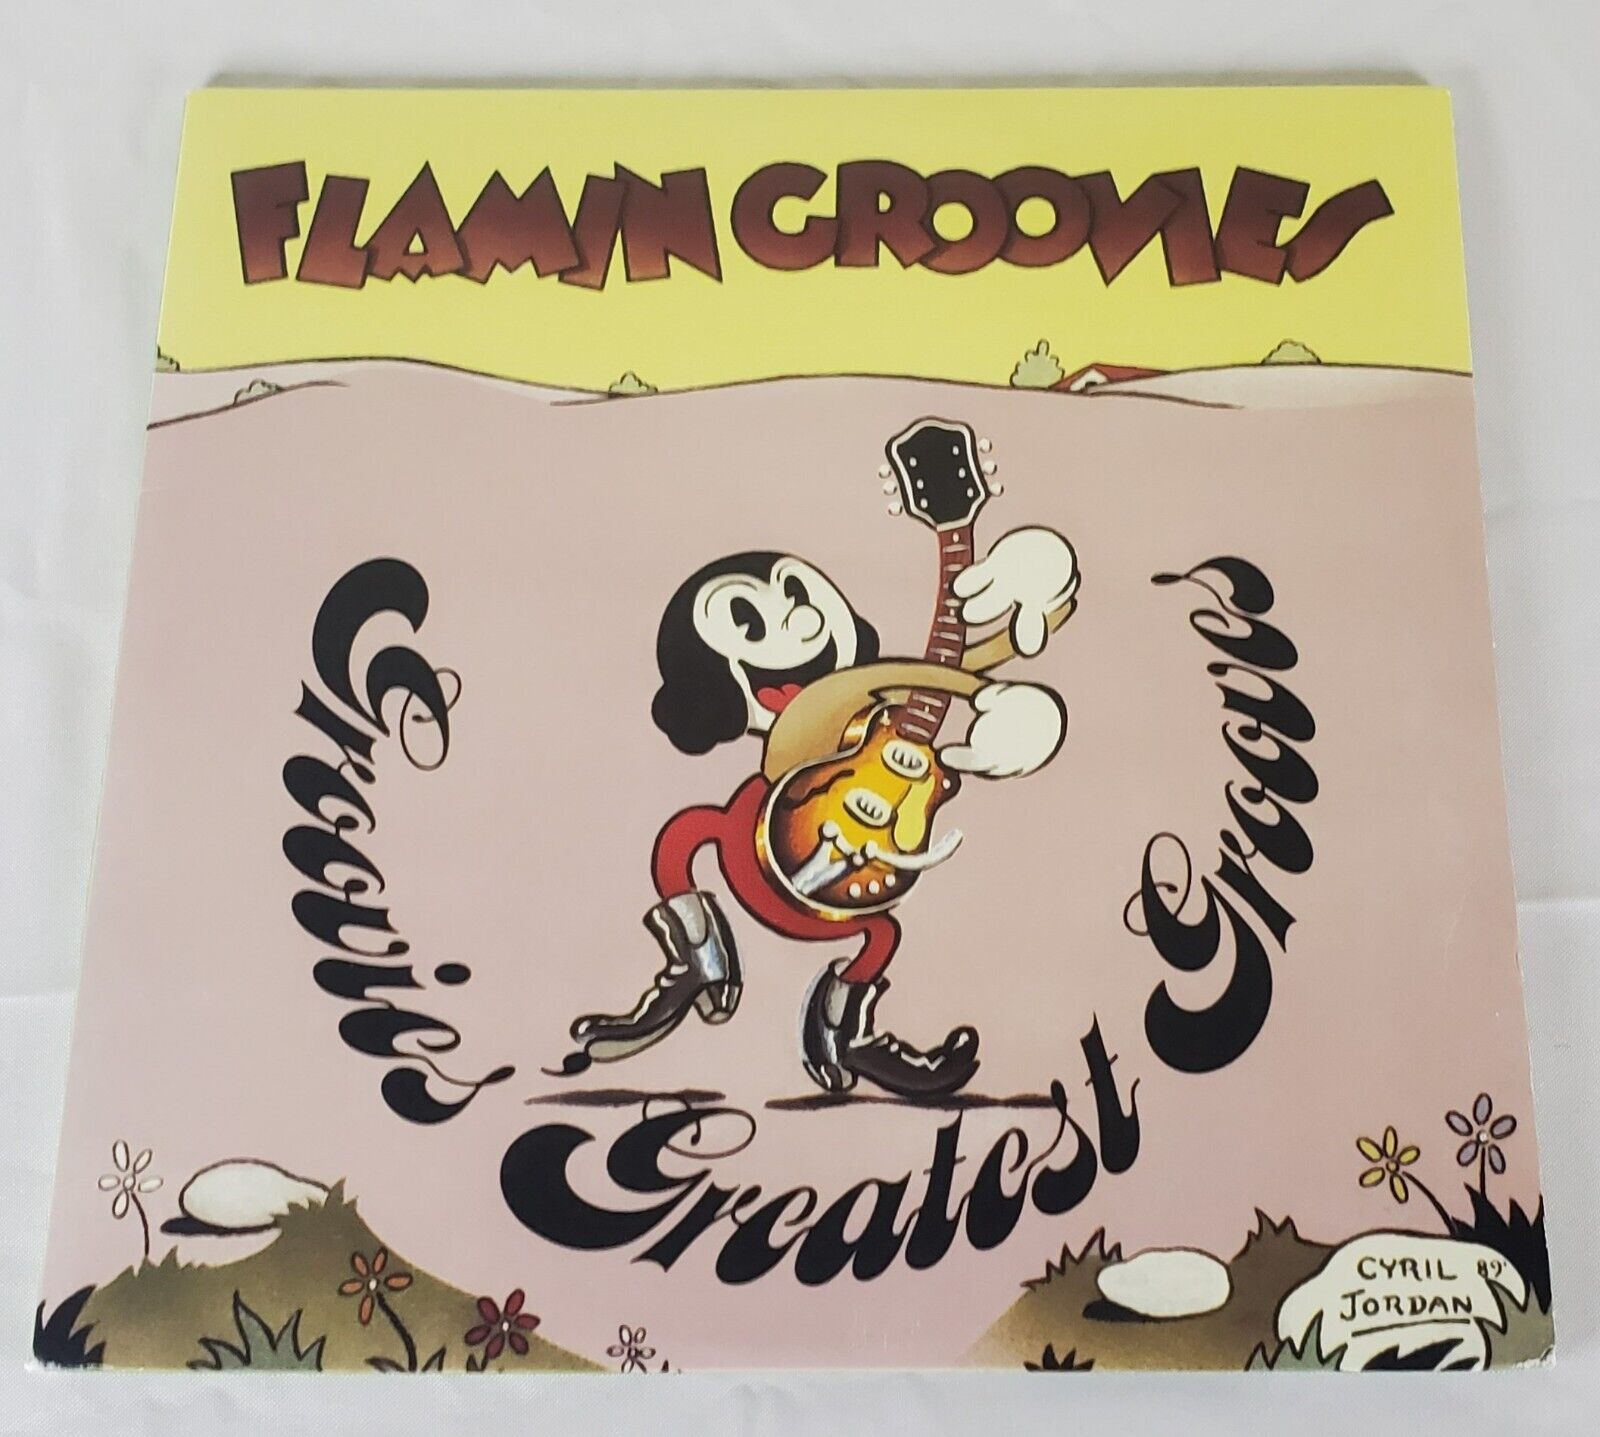 FLAMIN GROOVIES / Groovies Greatest Grooves  2LP vinyl gatefold - Like New 2016